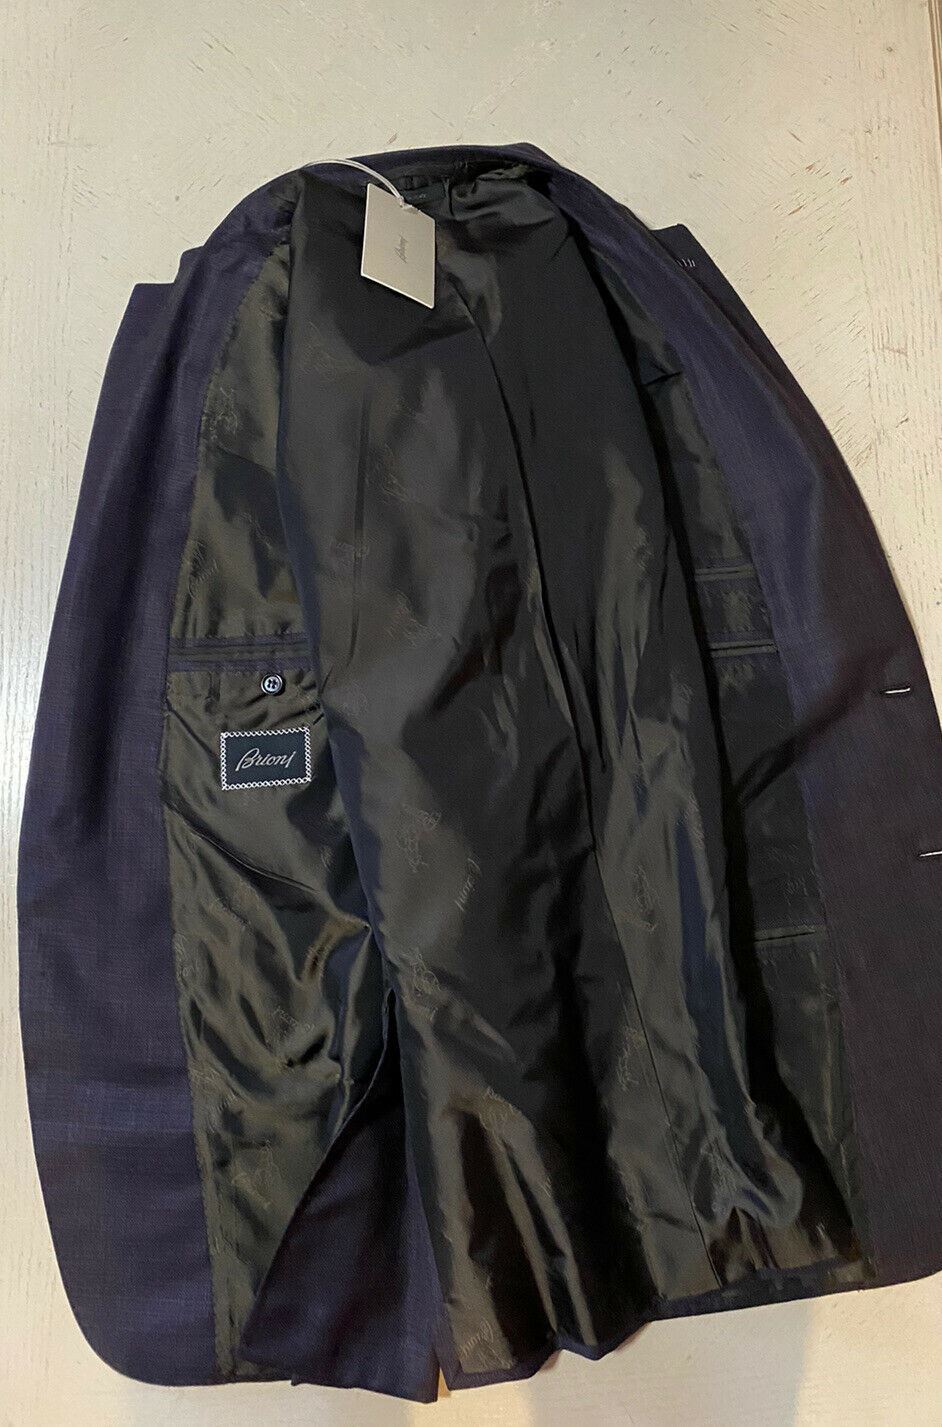 NWT $4400 Brioni Мужское шерстяное спортивное пальто Блейзер Бордовый 44R US/54R EU